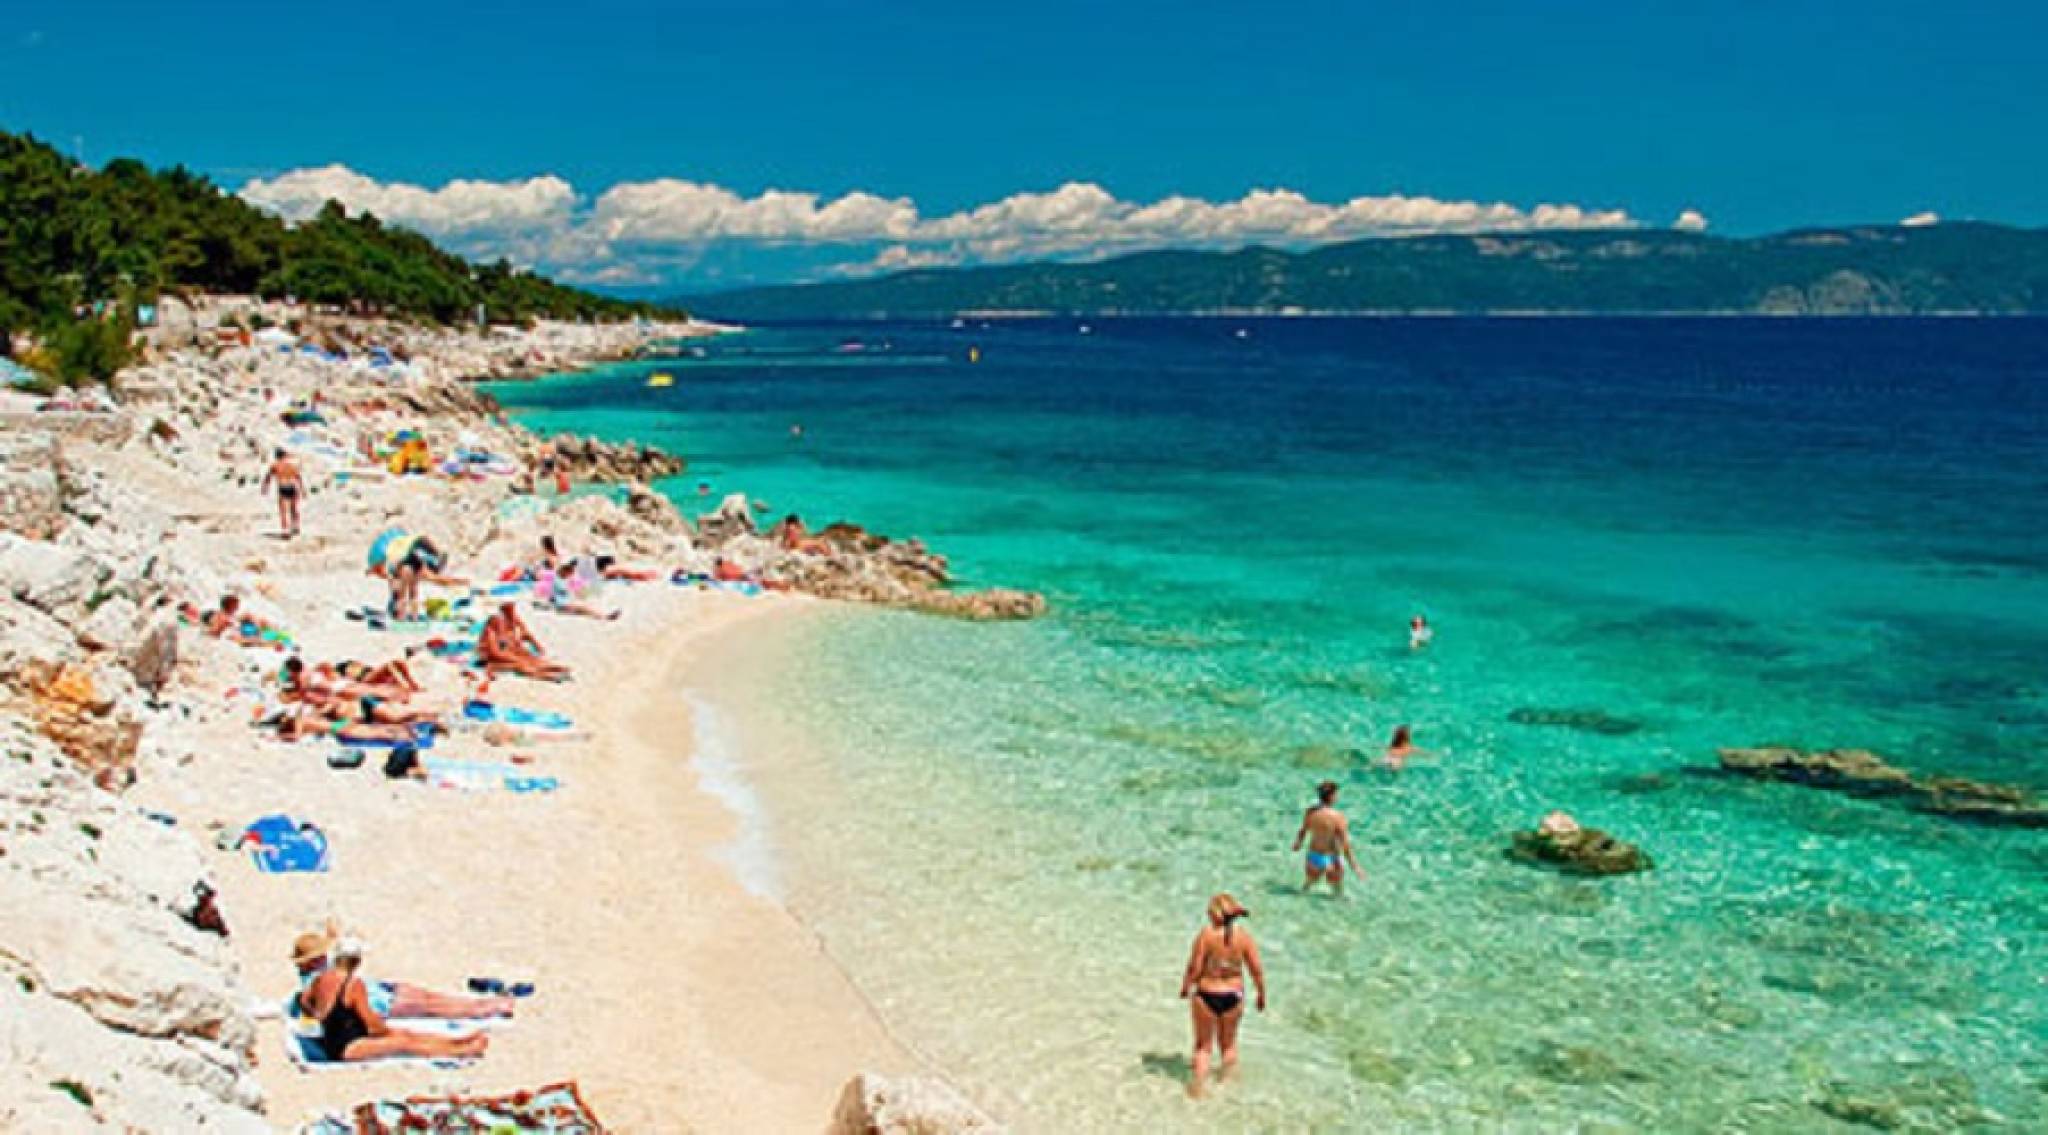 Le spiagge più belle della Croazia - Immagine 182035 ...